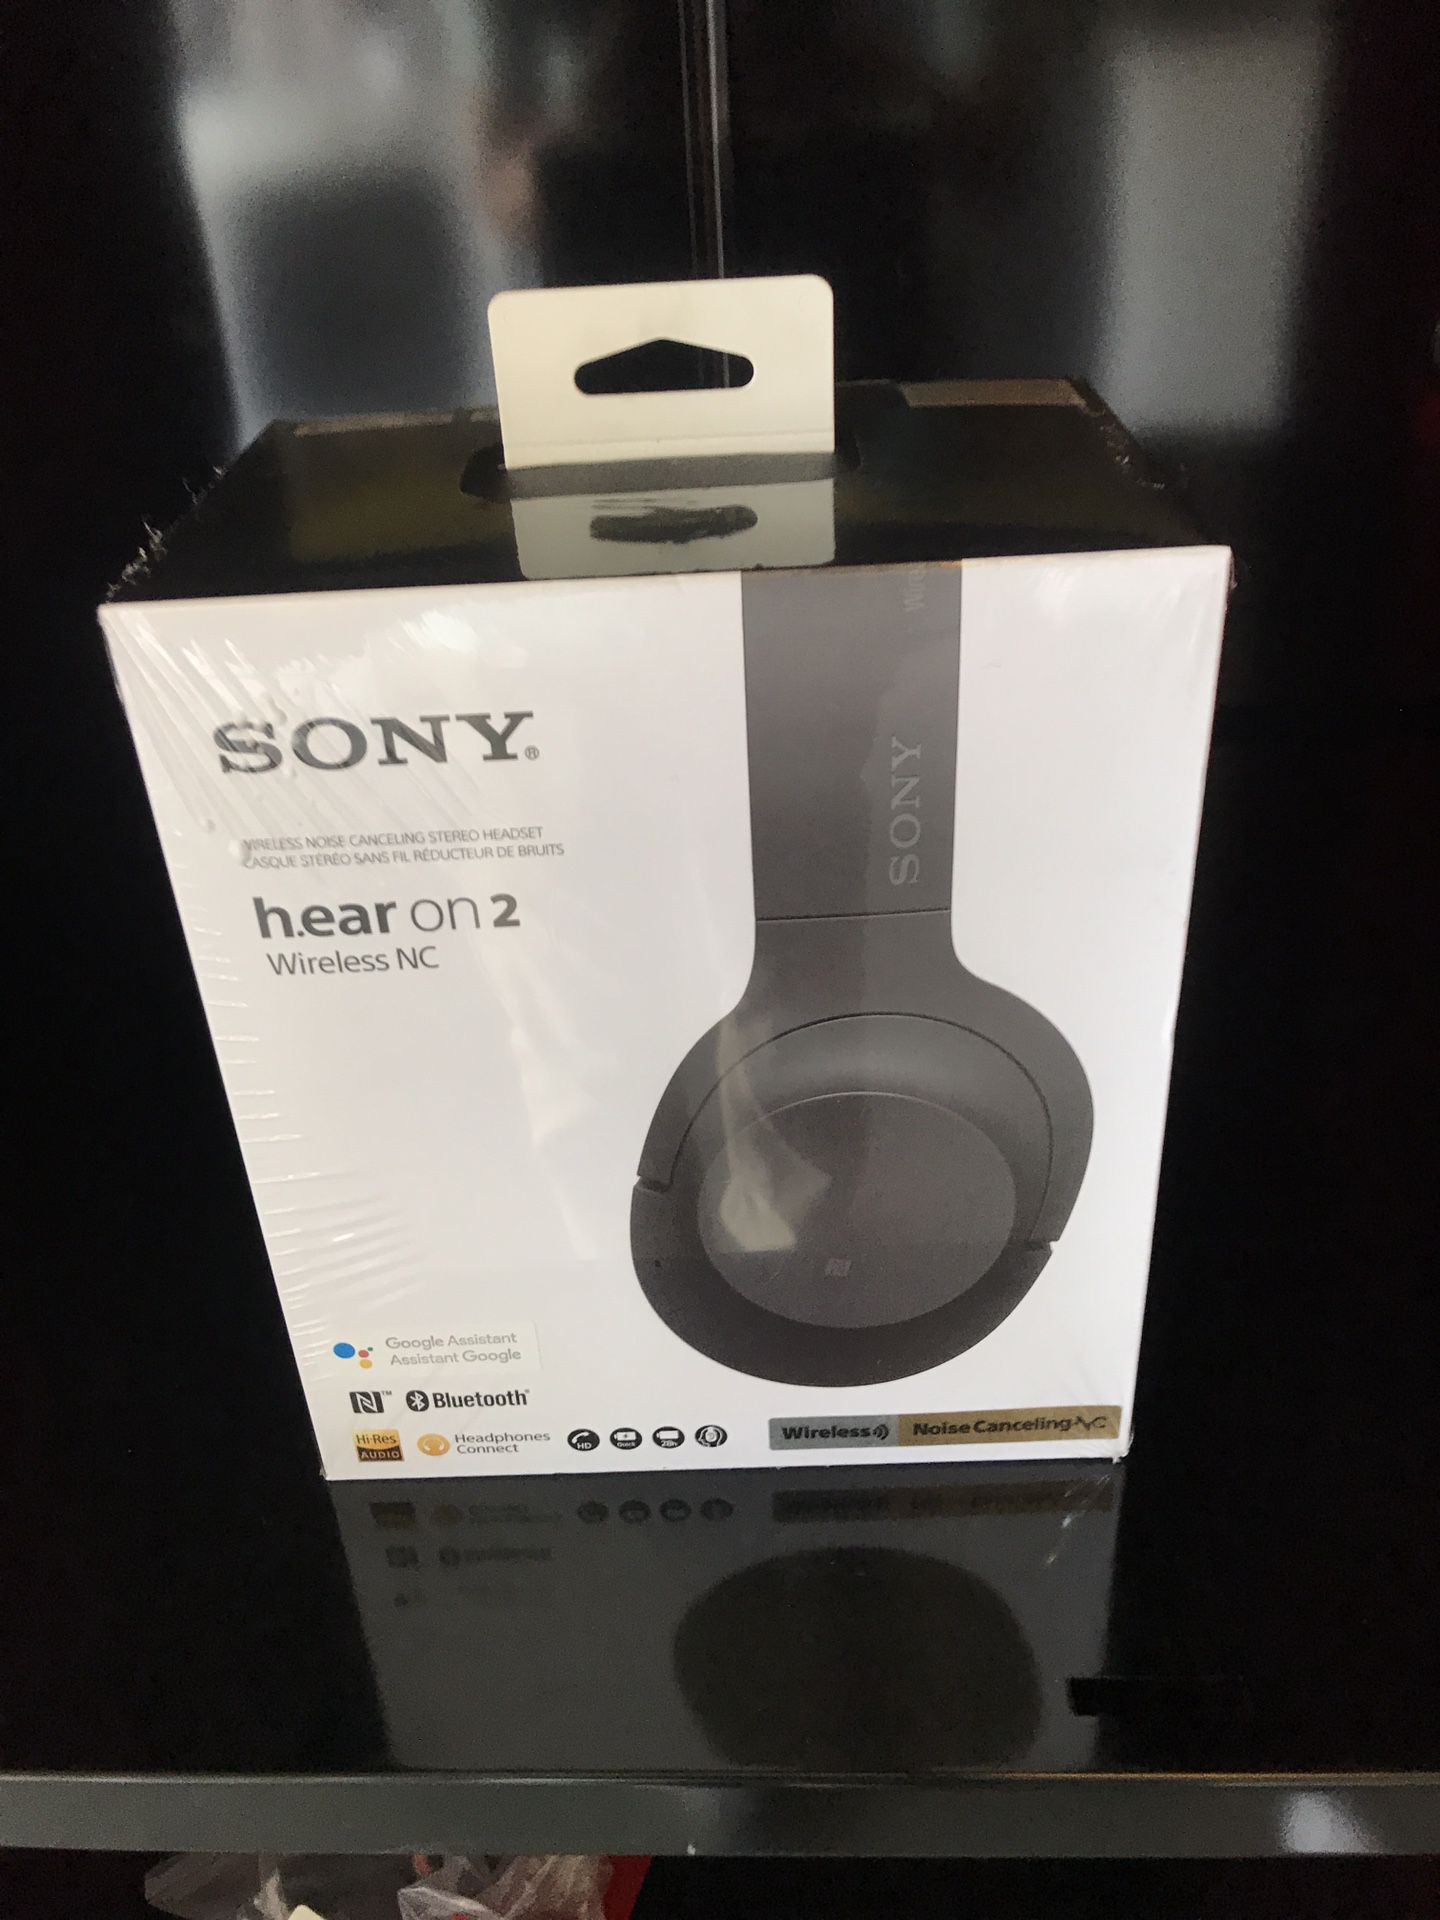 Sony h.ear on 2 Wireless Headphones